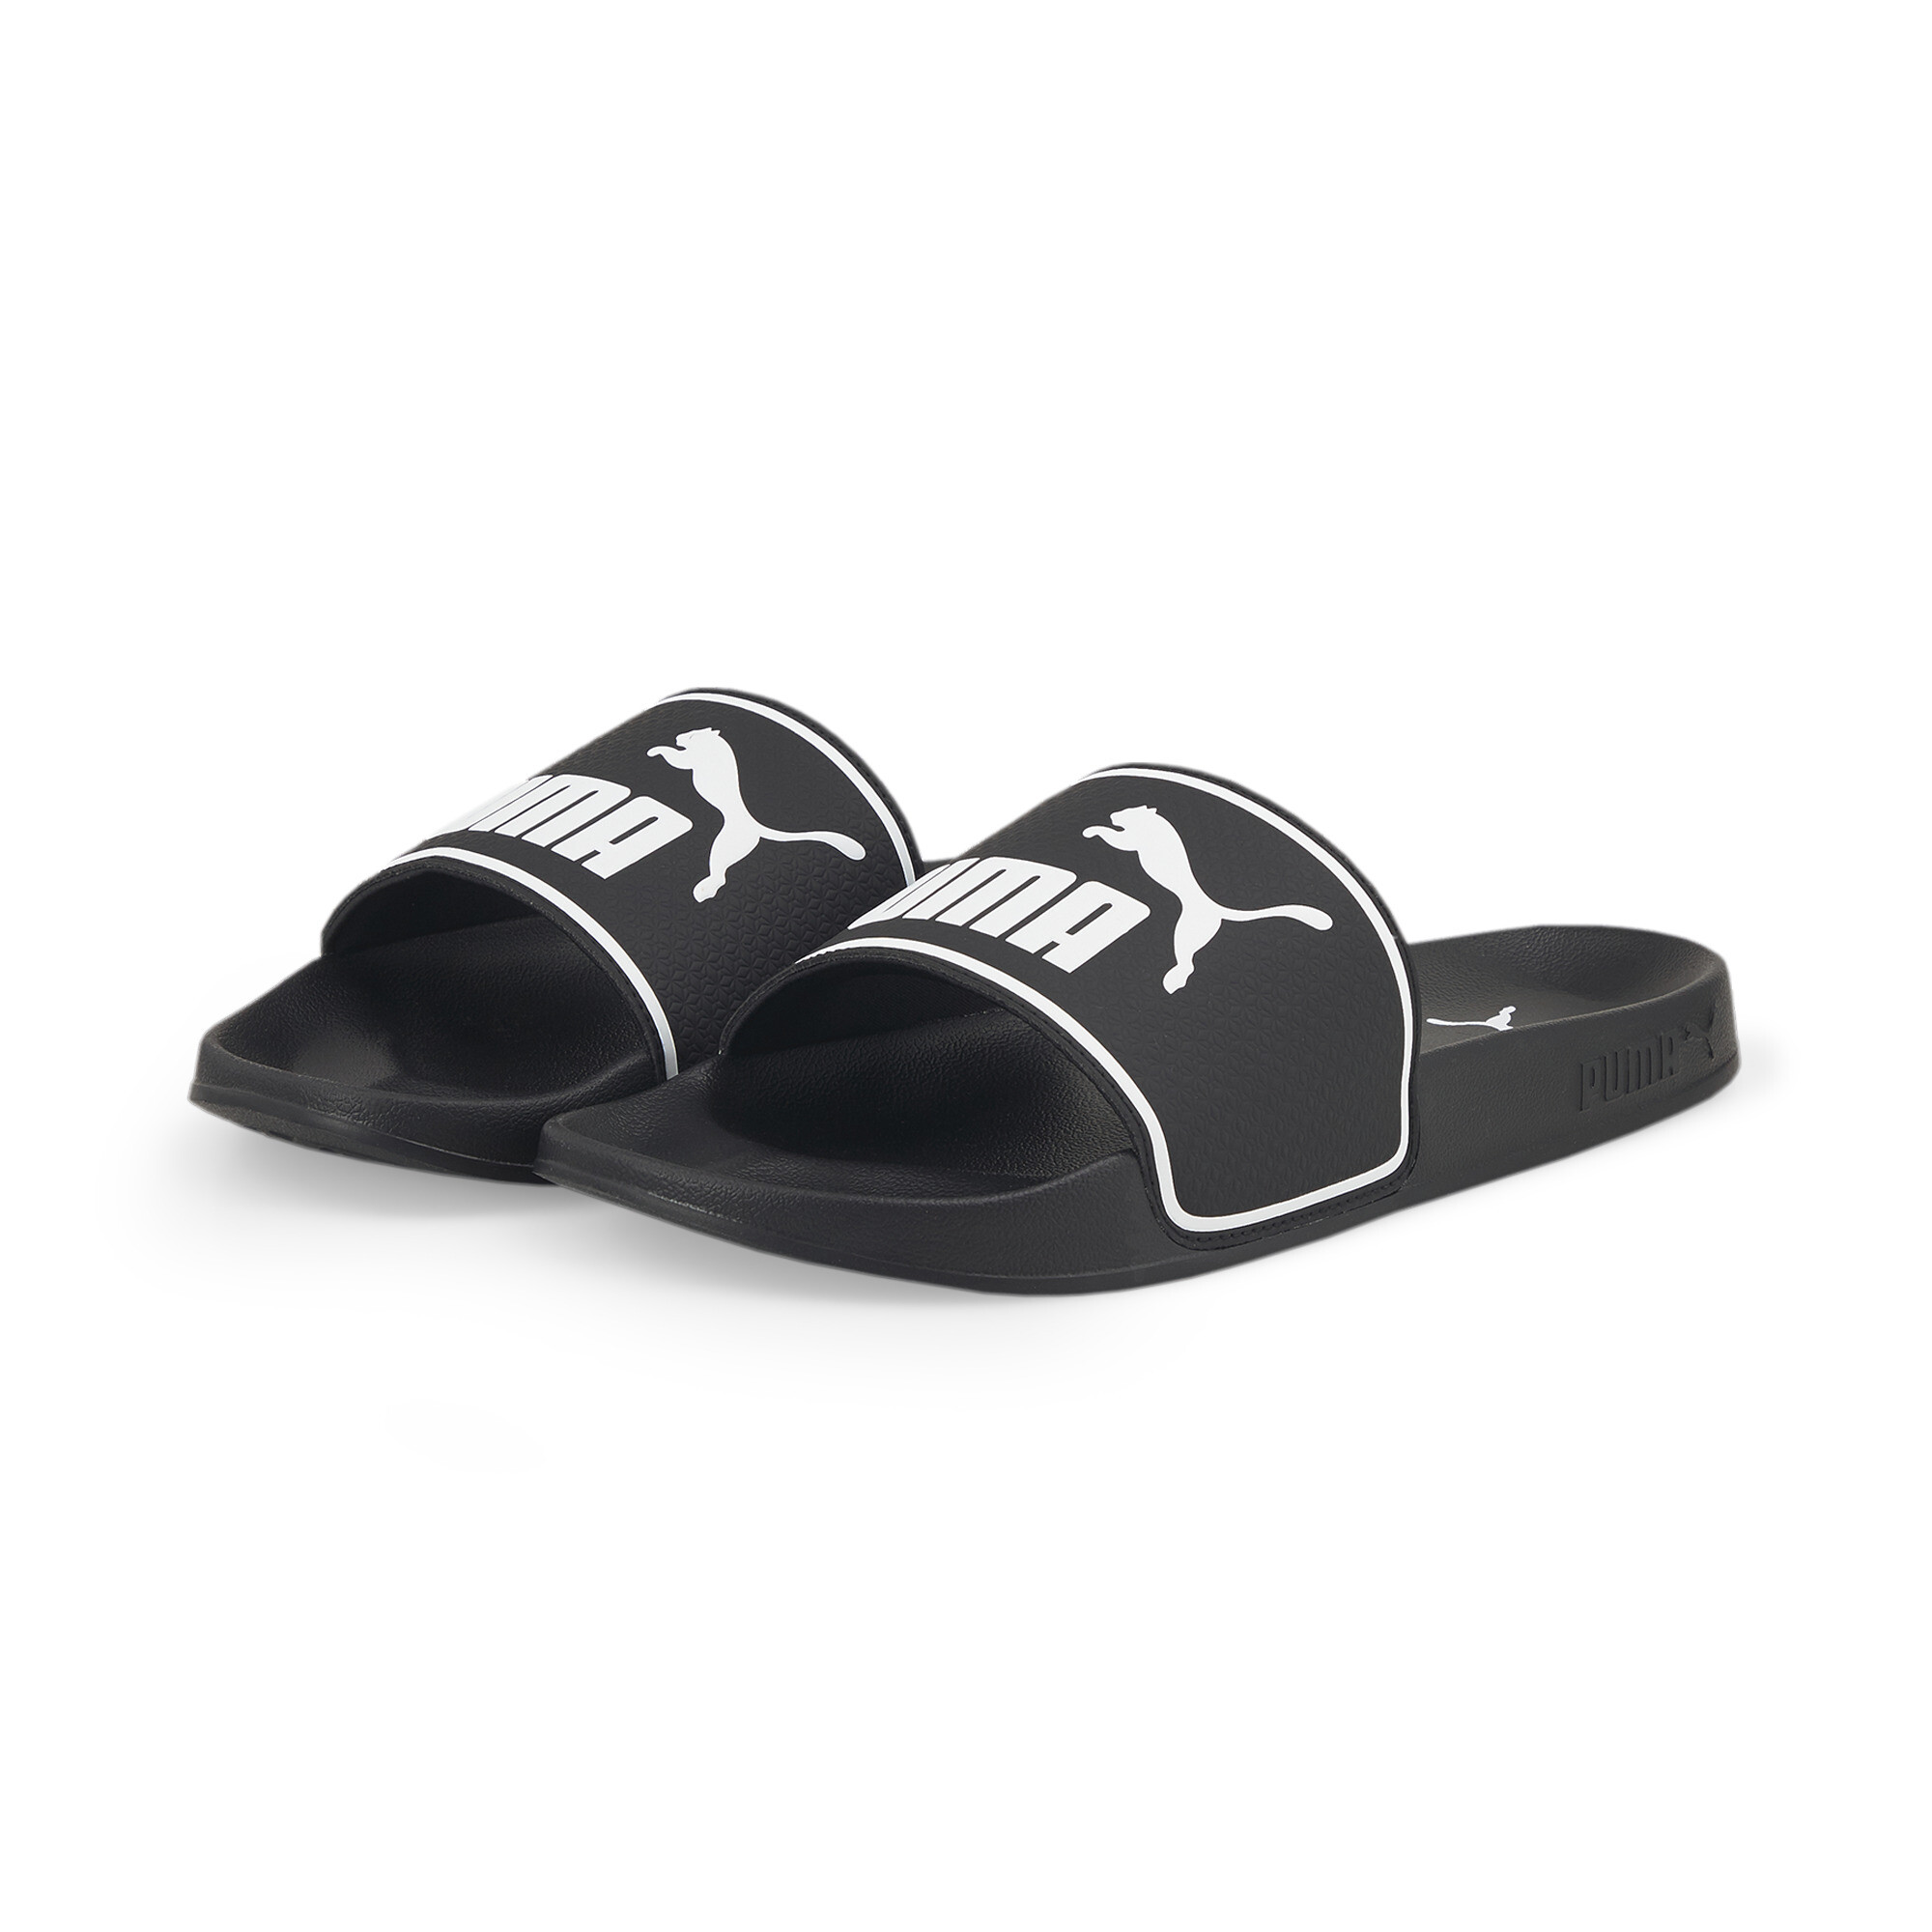 Men's PUMA Leadcat 2.0 Sandals In Black, Size EU 37